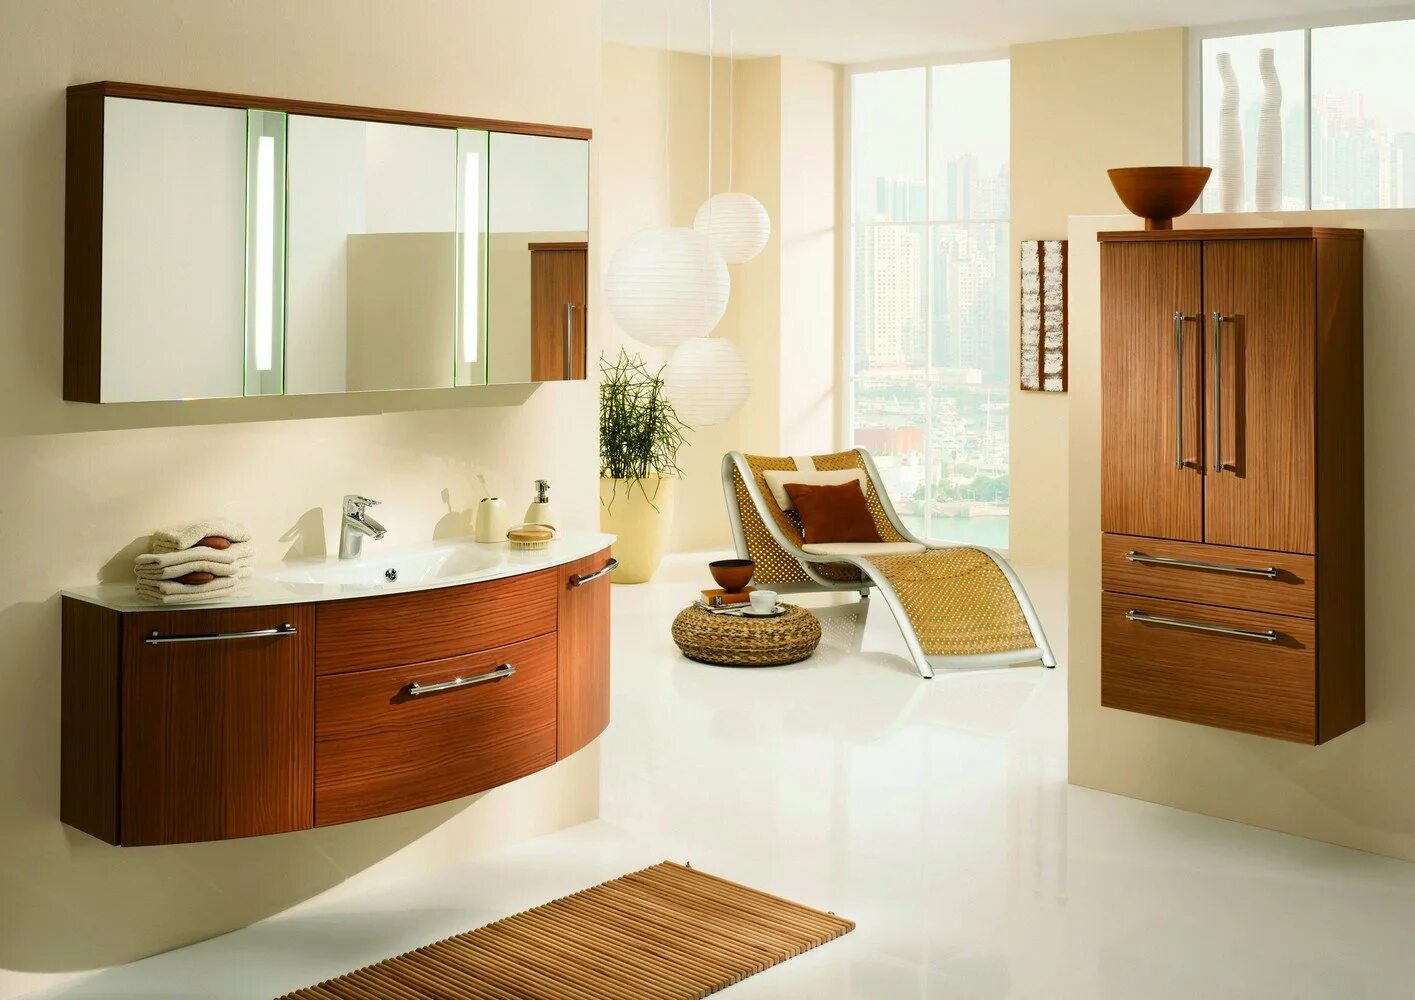 Лучшая мебель для ванны. Мебель для ванных комнат. Красивая мебель для ванной. Набор мебели для ванной комнаты. Красивые комплекты мебели для ванной.